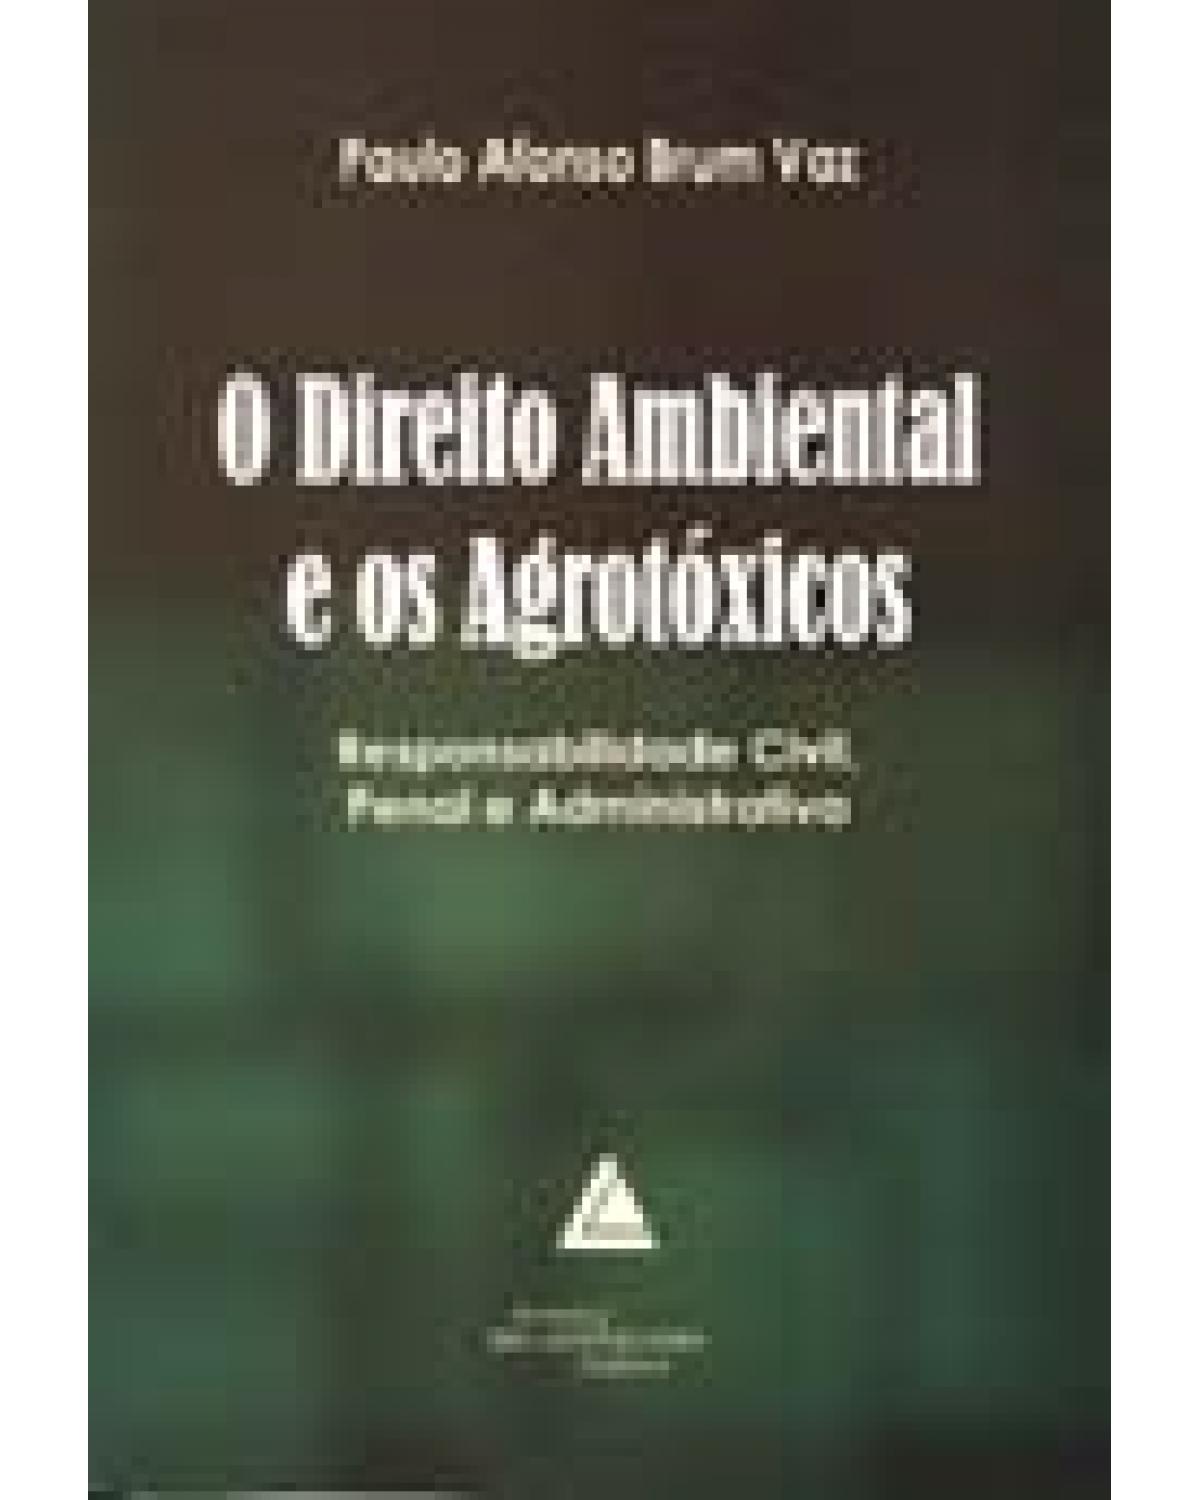 O direito ambiental e os agrotóxicos: Responsabilidade civil, penal e administrativa - 1ª Edição | 2006